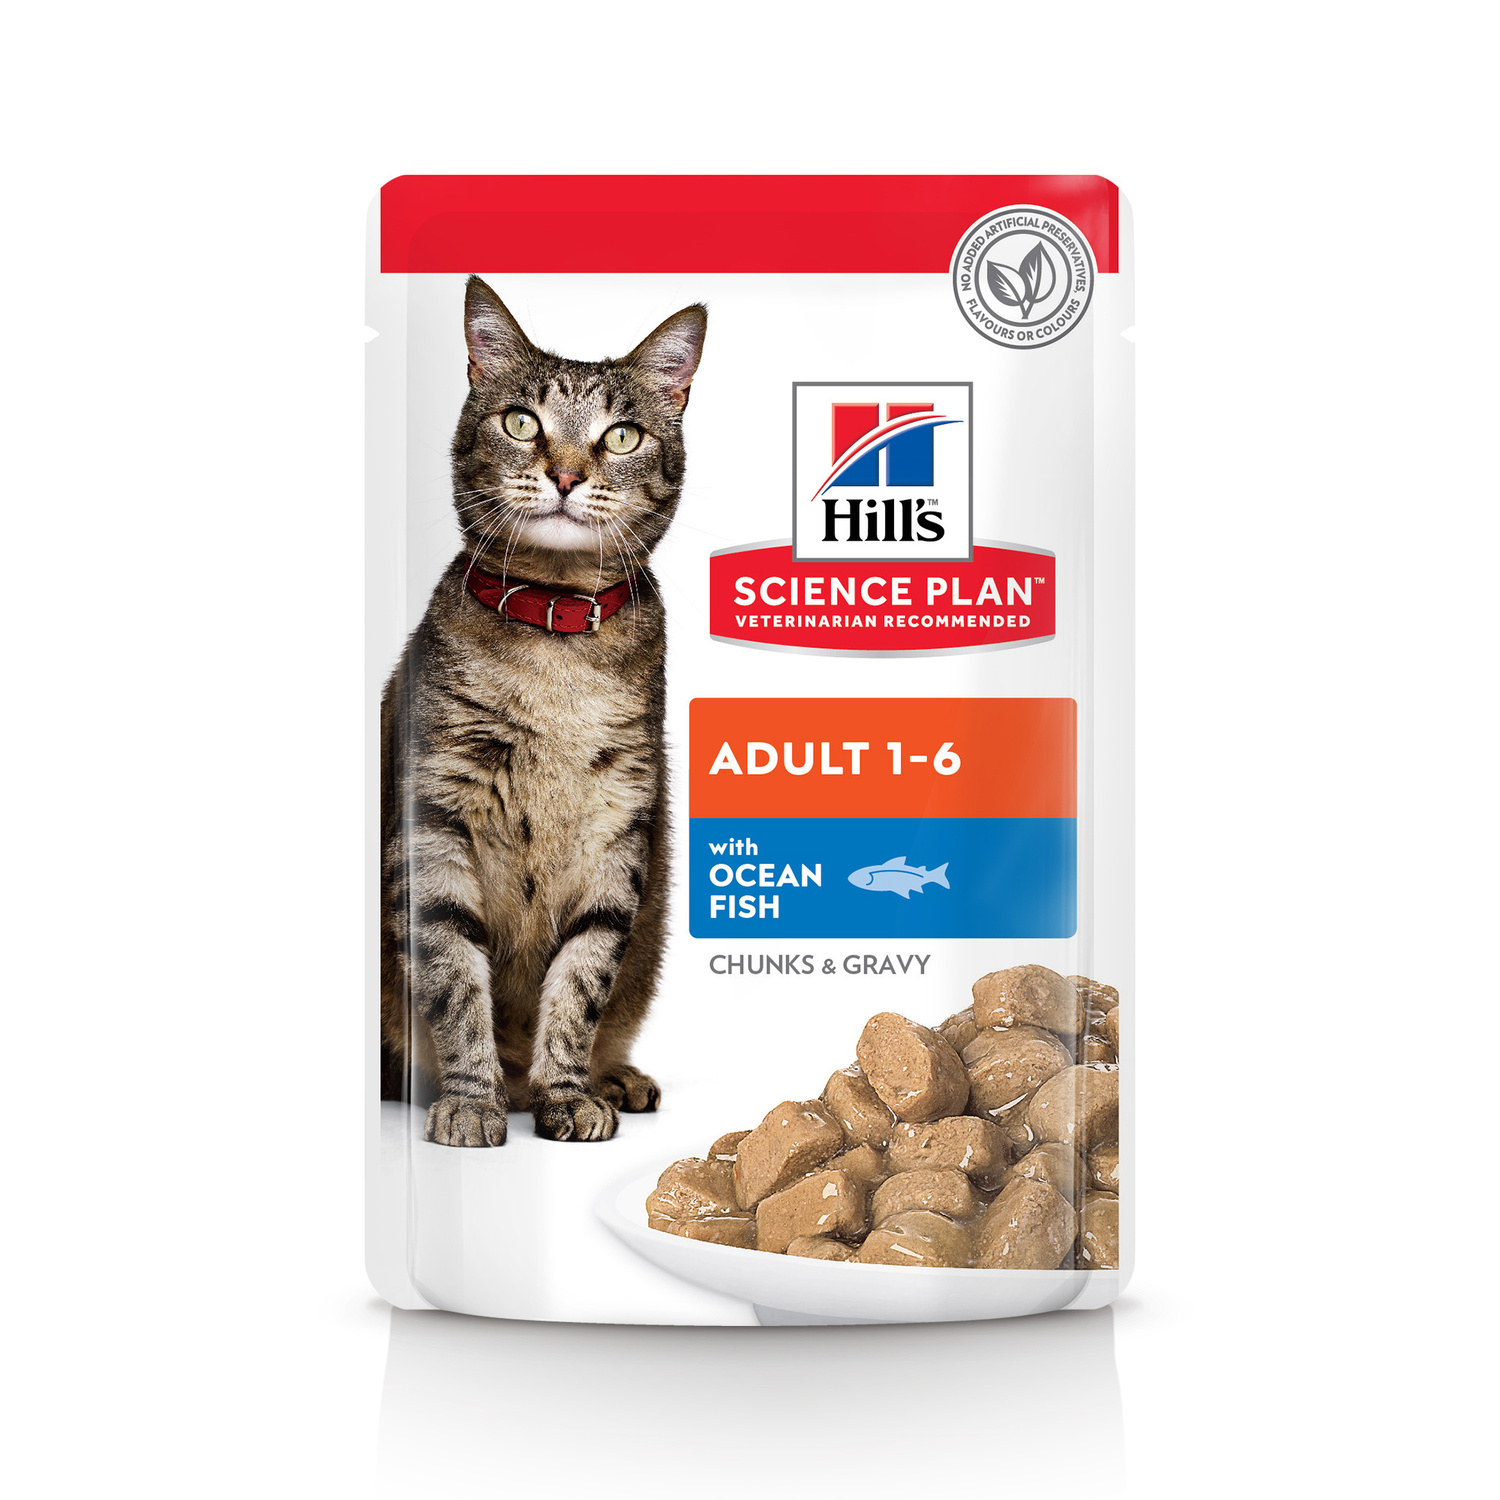 Hill's консервы для взрослых кошек для поддержания жизненной энергии и иммунитета, пауч с океанической рыбой в соусе (85 г)